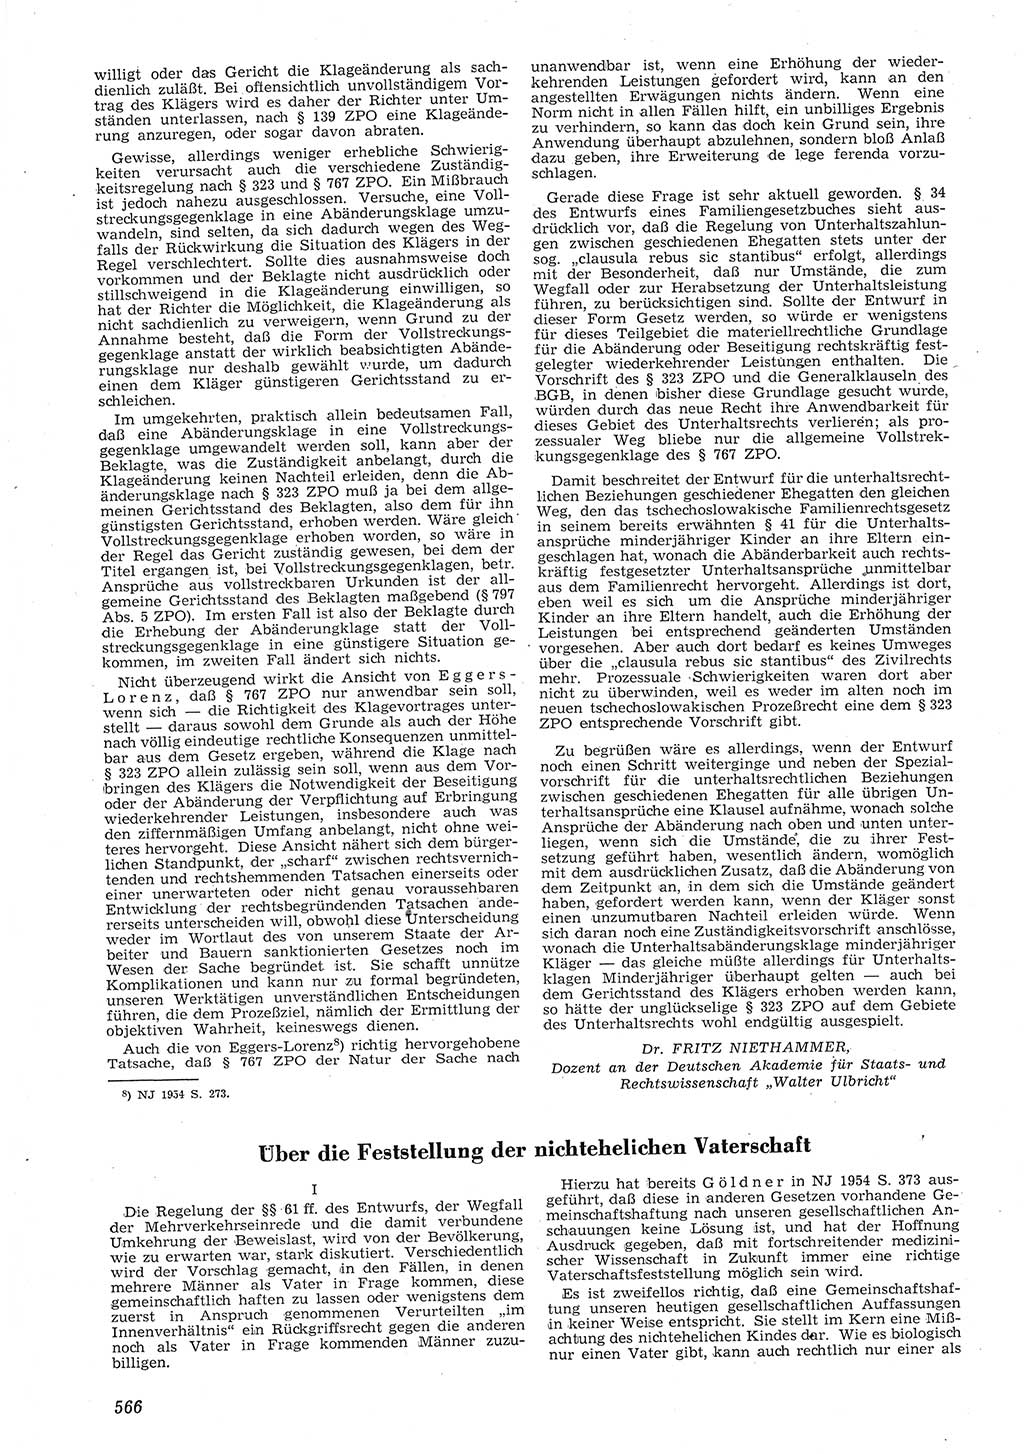 Neue Justiz (NJ), Zeitschrift für Recht und Rechtswissenschaft [Deutsche Demokratische Republik (DDR)], 8. Jahrgang 1954, Seite 566 (NJ DDR 1954, S. 566)